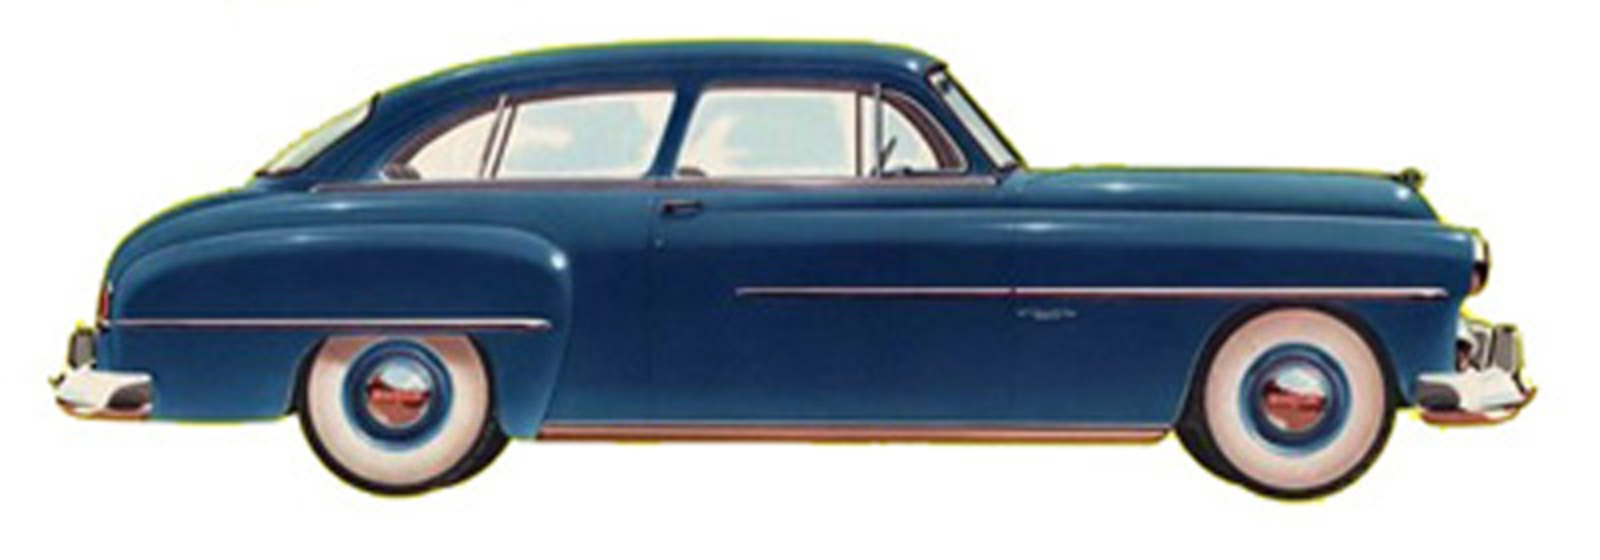 1951 Dodge Wayfarer 2 dr Sedan